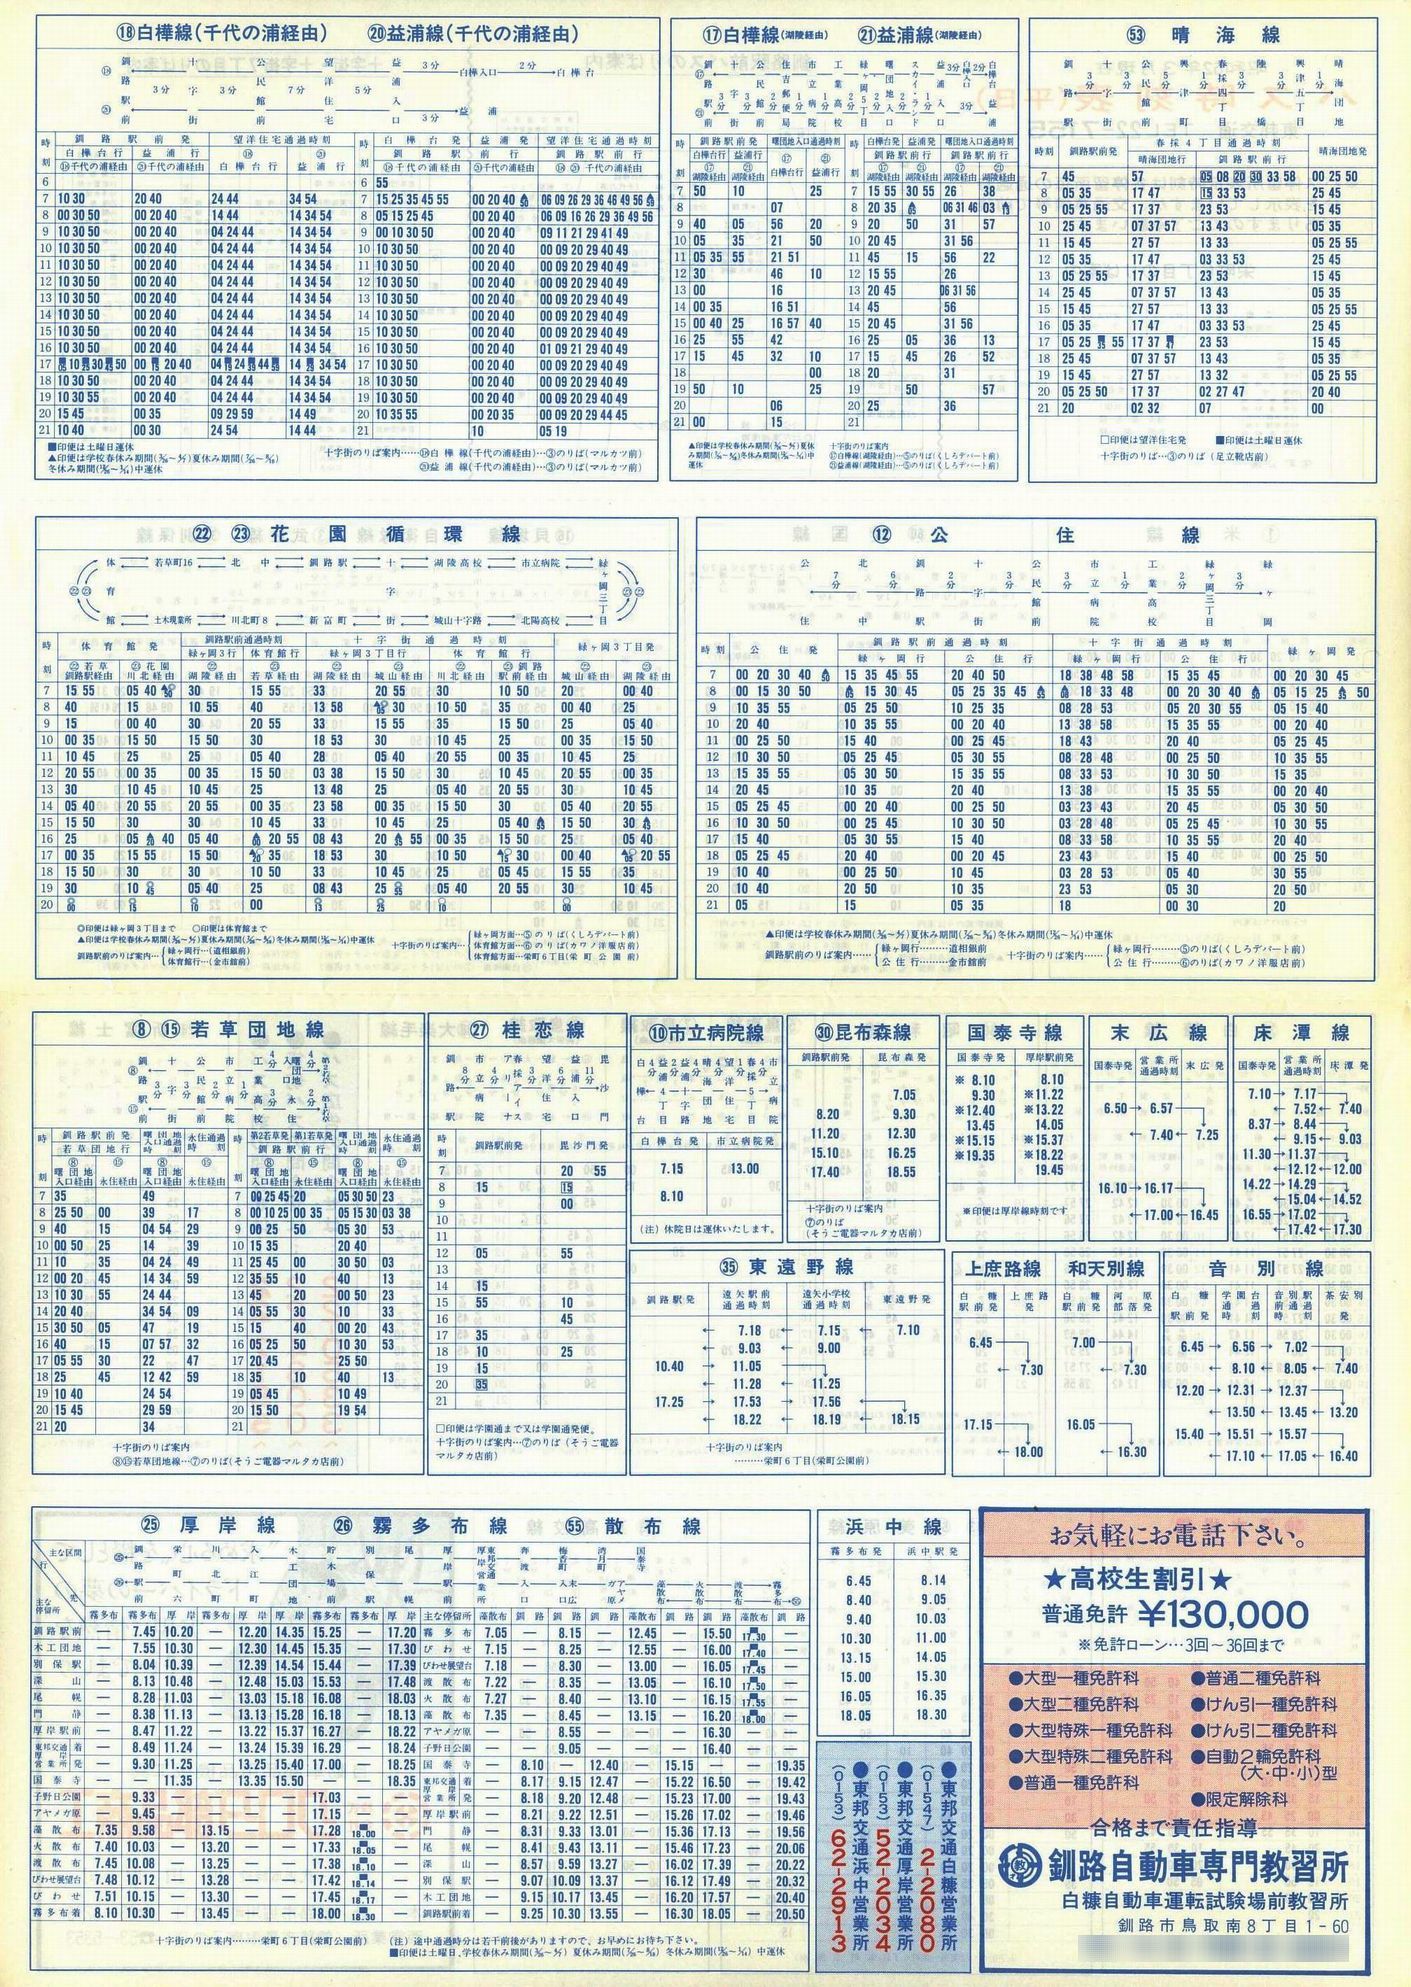 1987-03現在_東邦交通_平日時刻表裏面